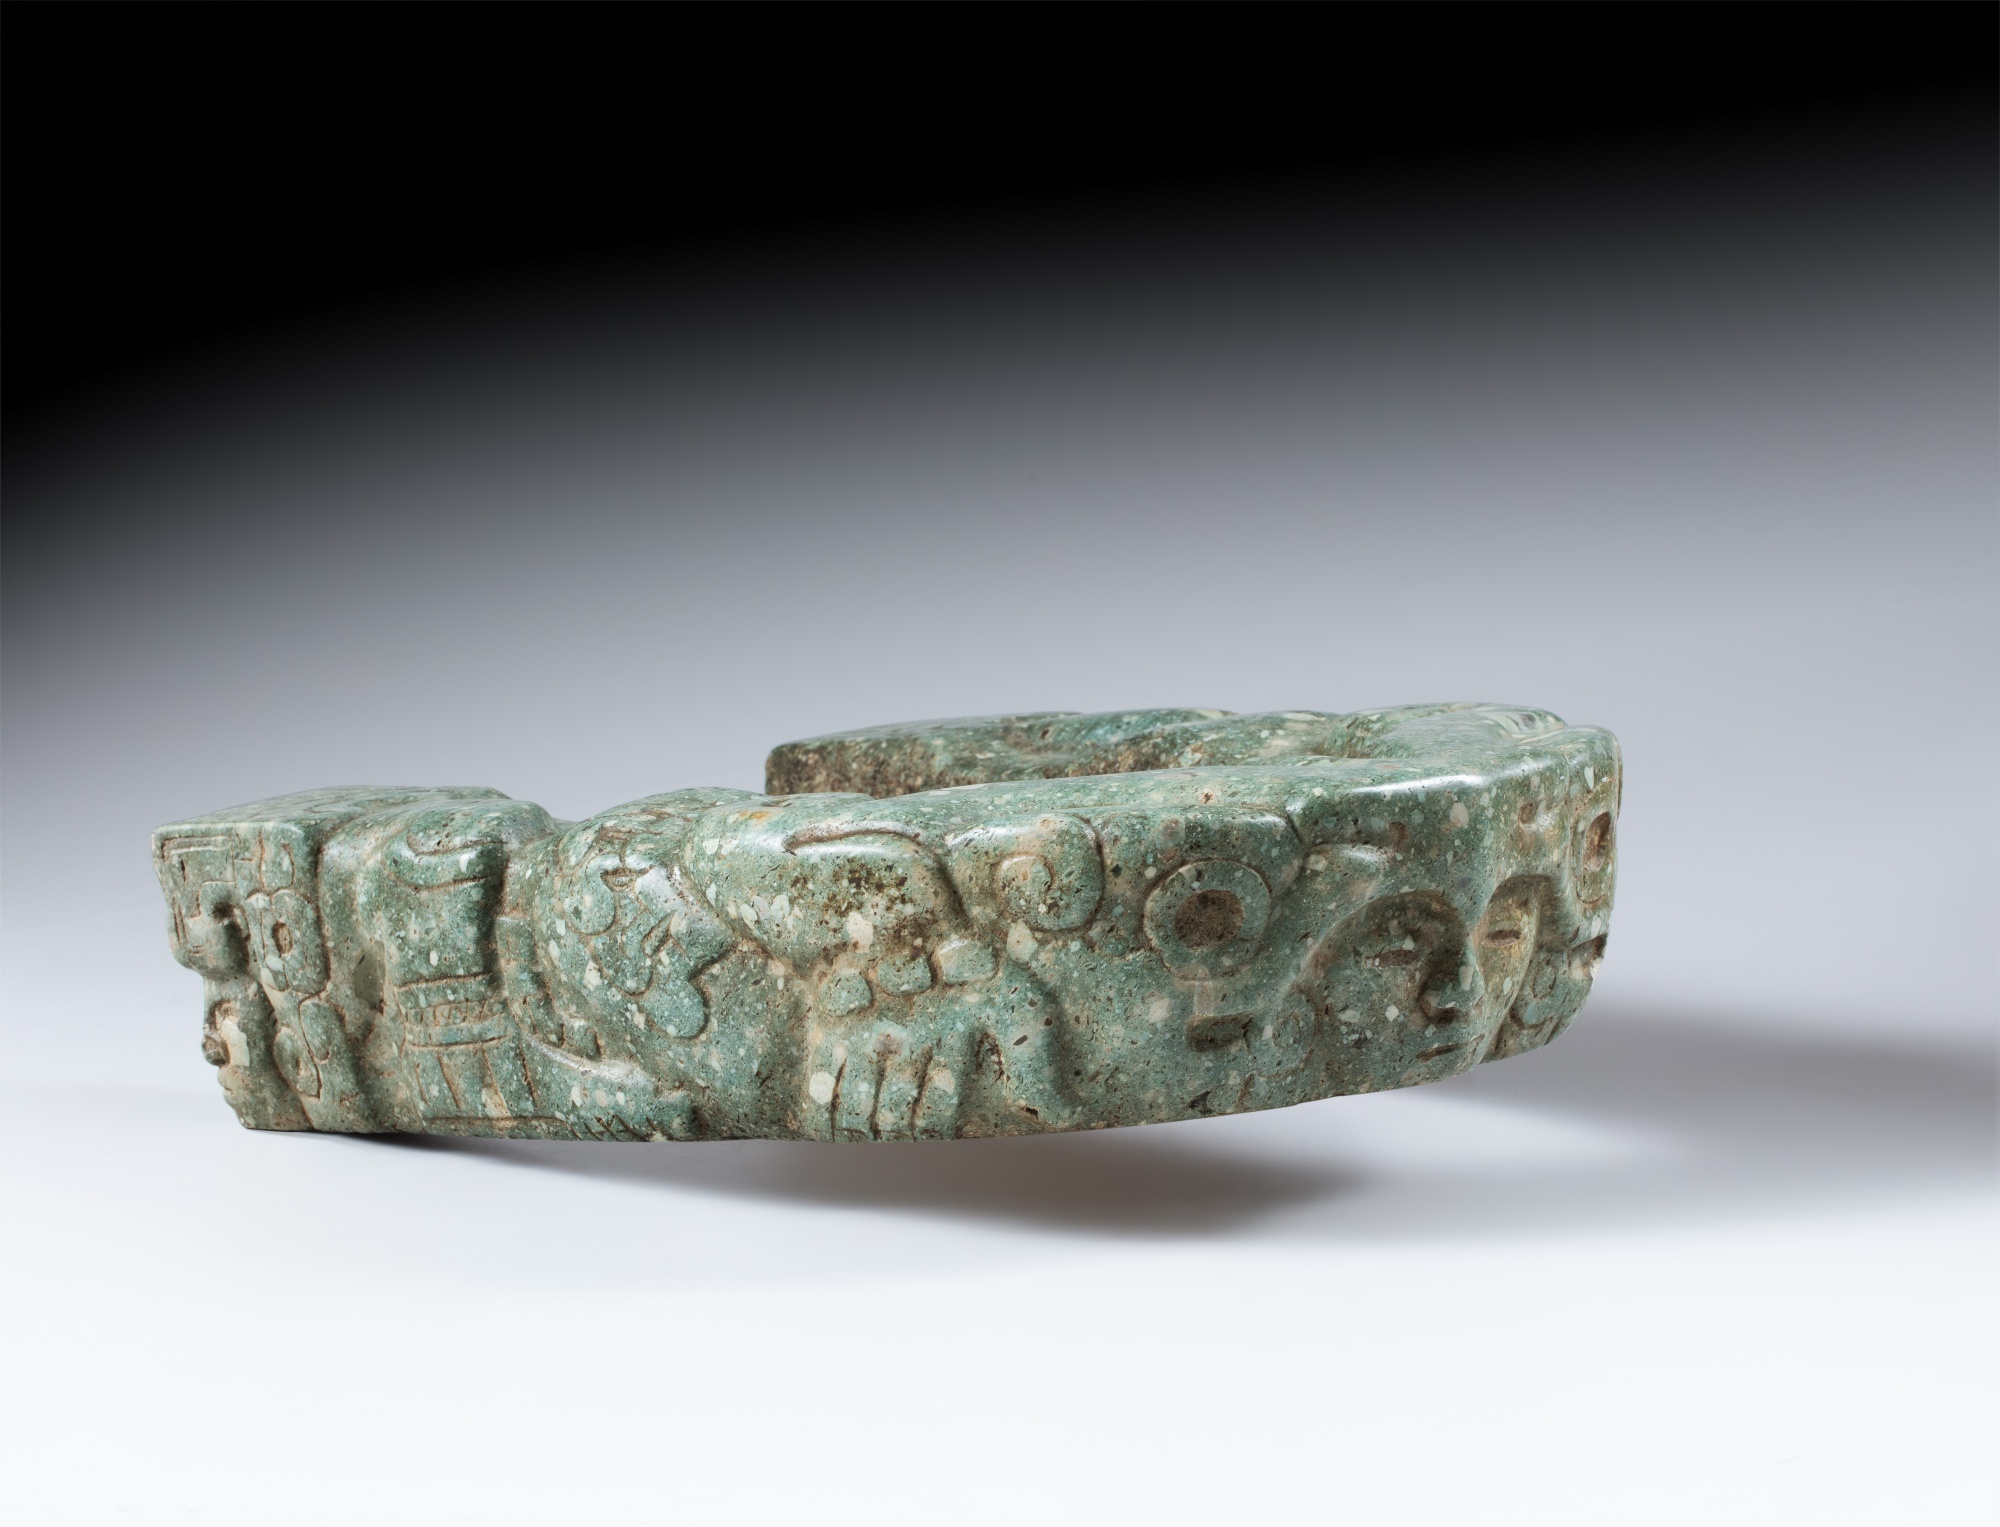 Joug, Veracruz, ca. 650 - 950 ap. J-C. | Veracruz Stone Yoke, ca. AD 650 - 950